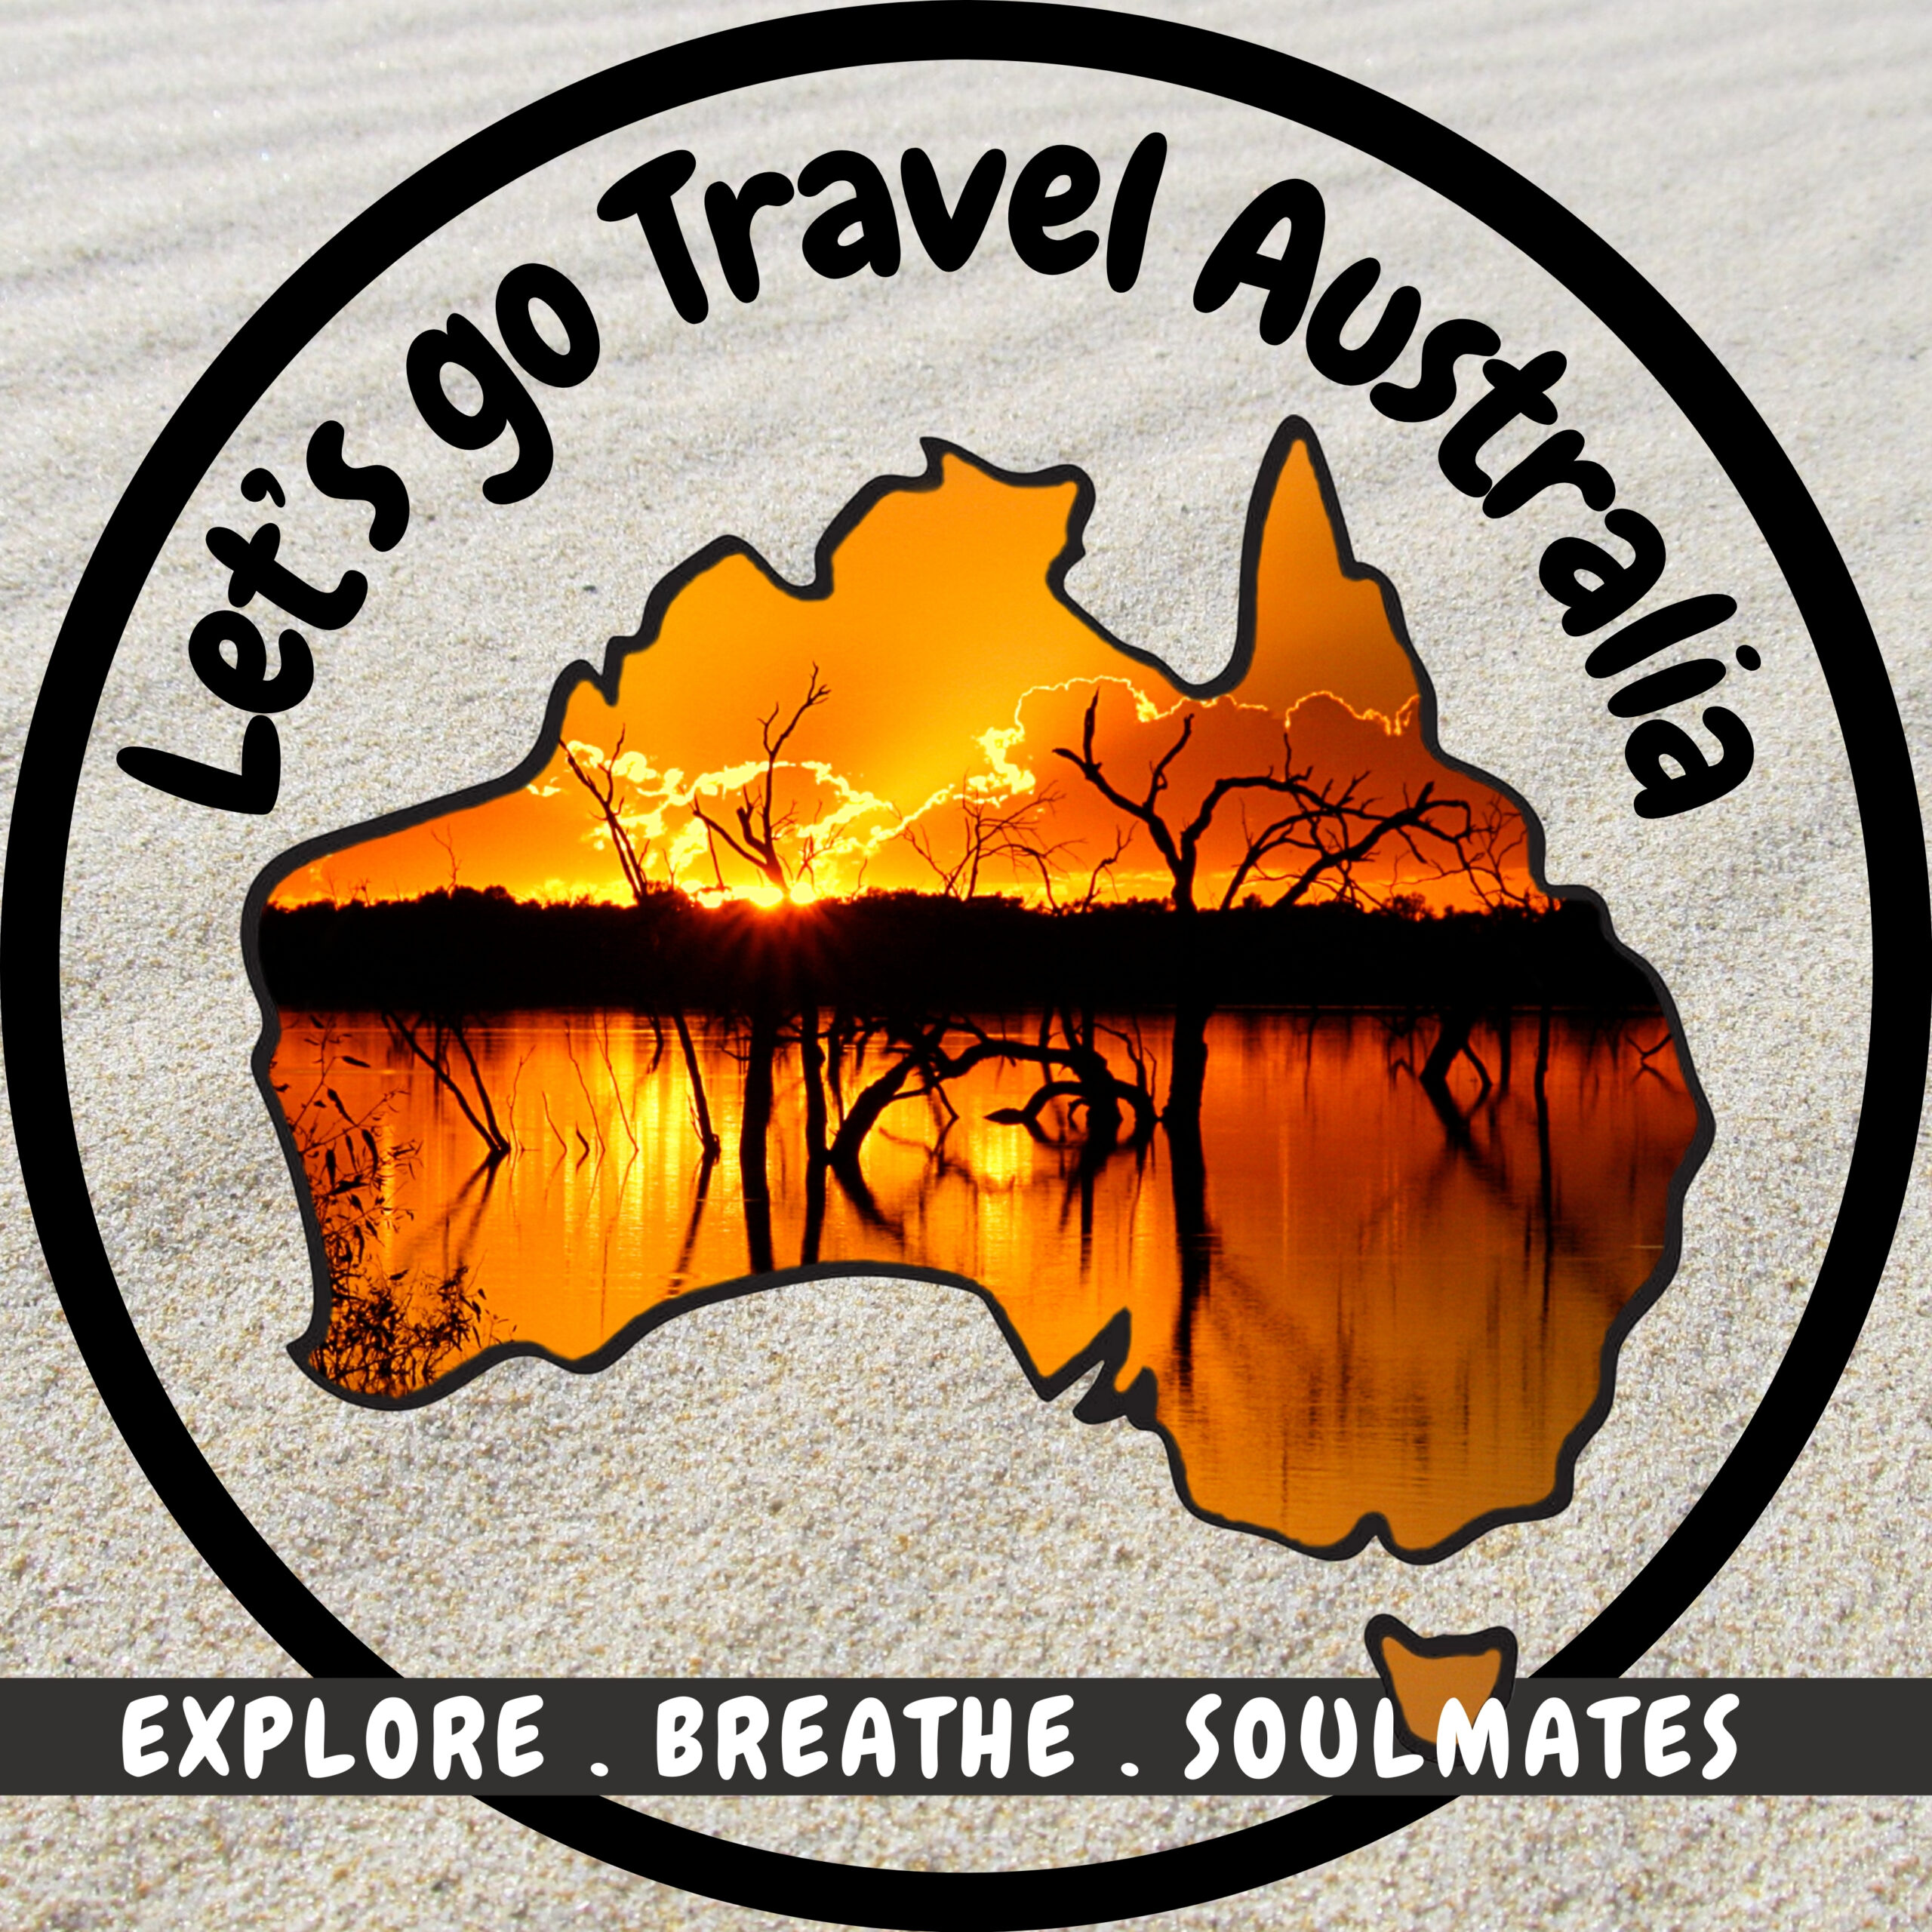 Let’s go Travel Australia Logo